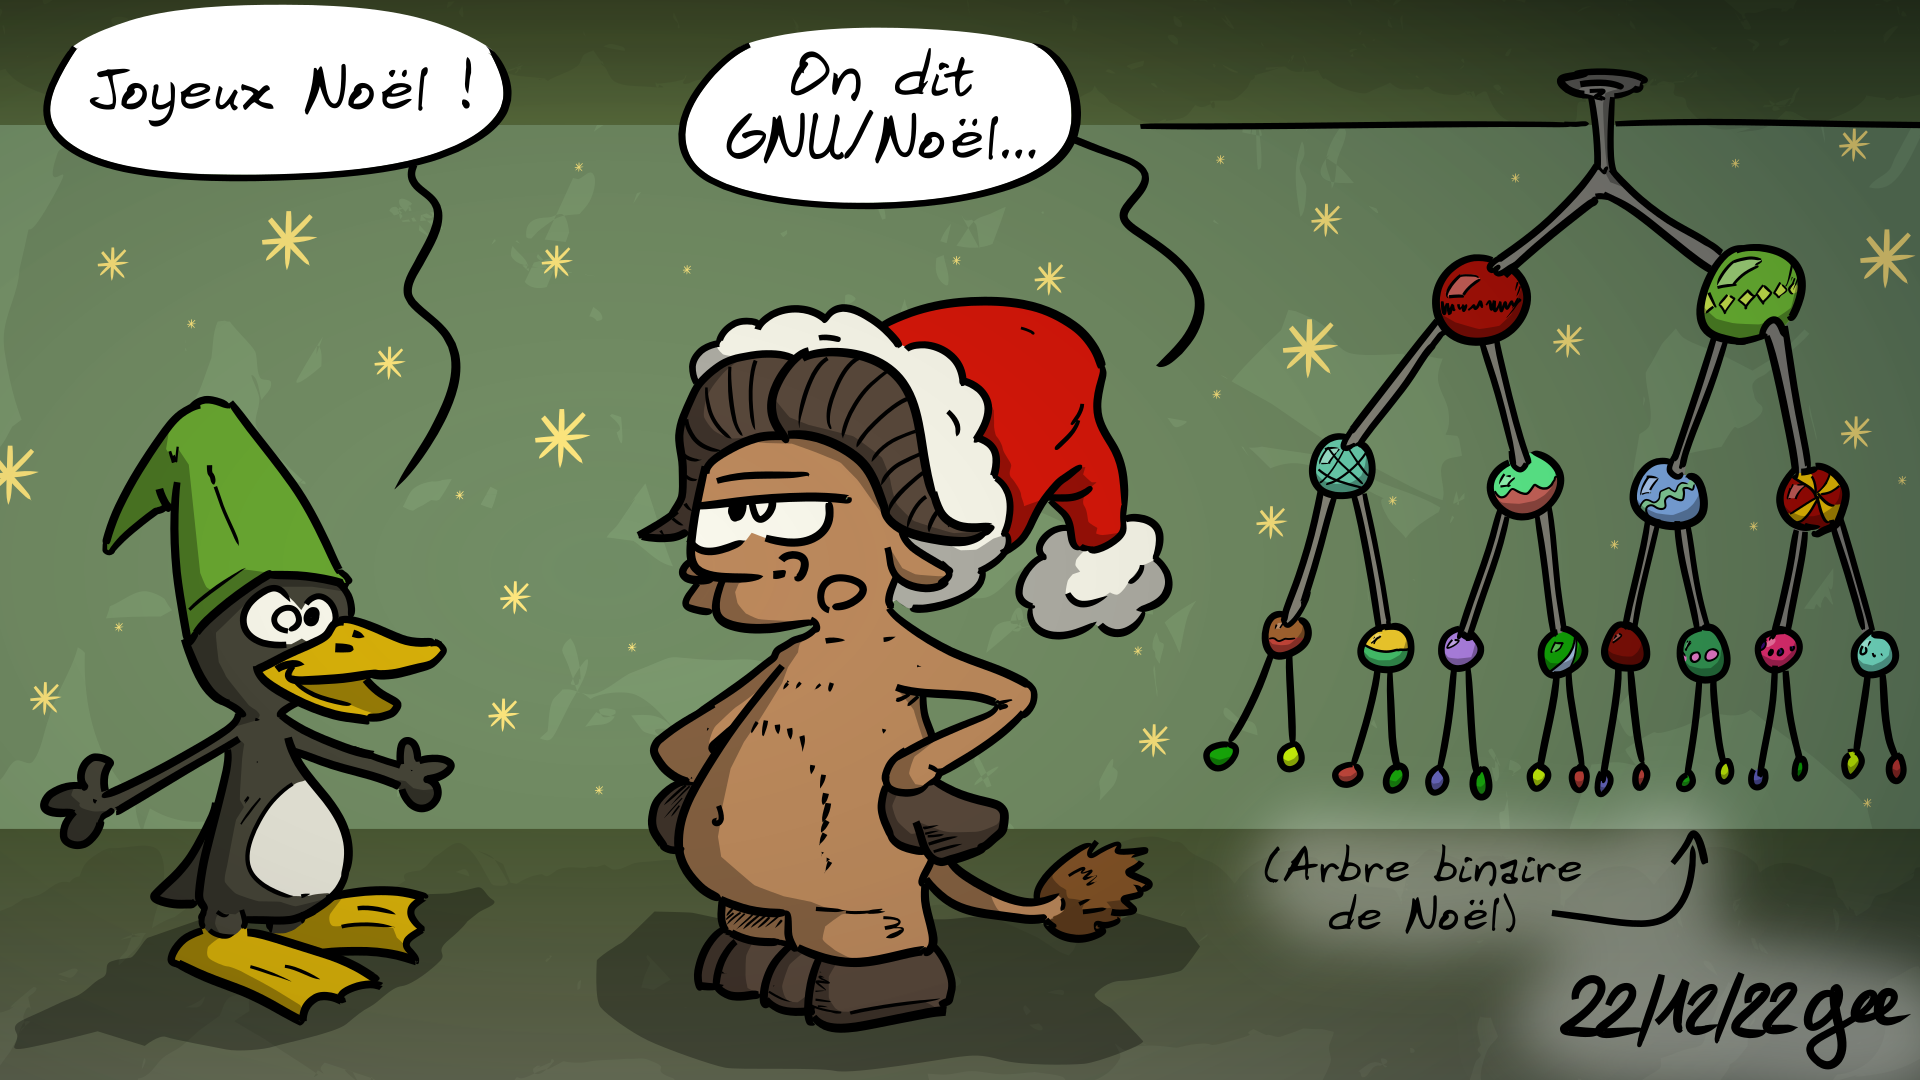 Tux, déguisé en lutin : « Joyeux Noël ! » Le gnou de GNU, déguisé en Père Noël : « On dit GNU/Noël… » À côté, un arbre façon « arbre binaire mathématique », avec la racine en haut et une boule de Noël sur chaque nœud. Une étiquette indique : « (Arbre binaire de Noël) » Note : BD sous licence CC BY SA (grisebouille.net), dessinée le 22 décembre 2022 par Gee.